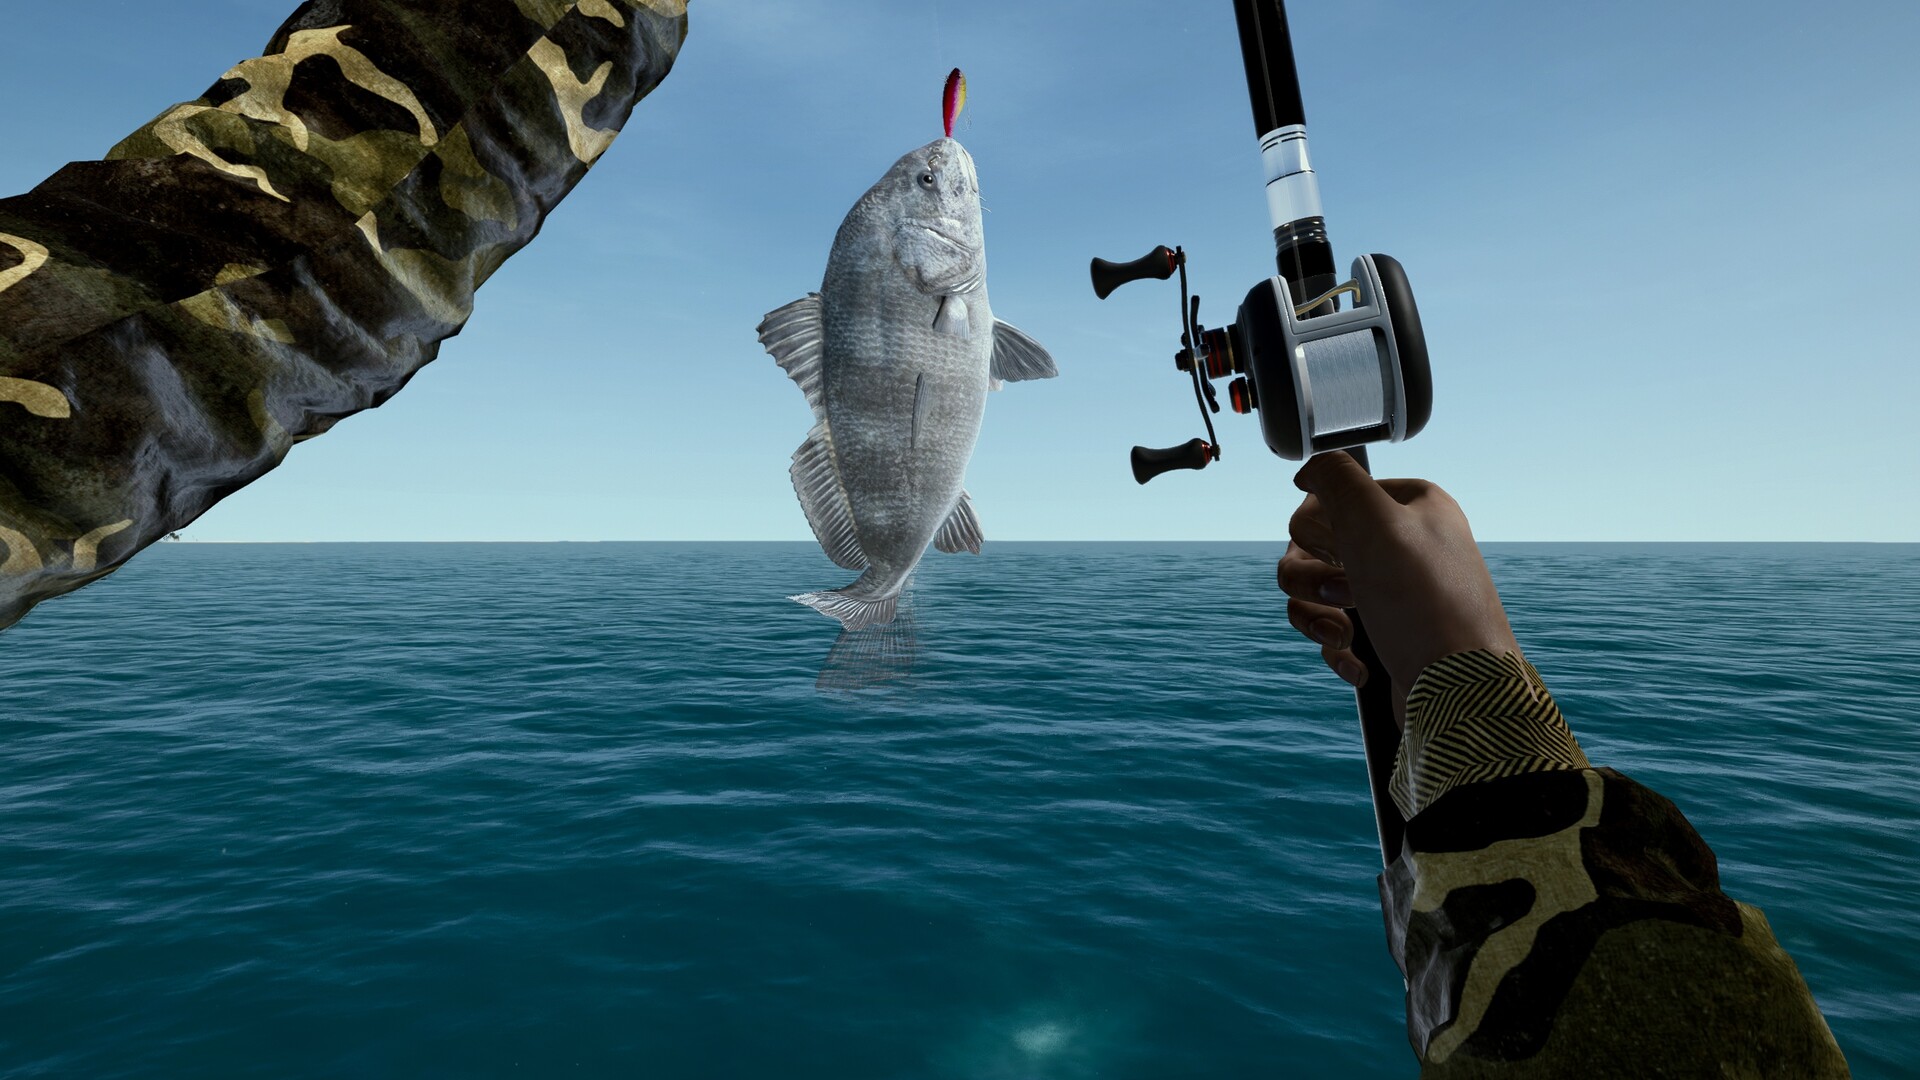 Ultimate Fishing Simulator Achievements